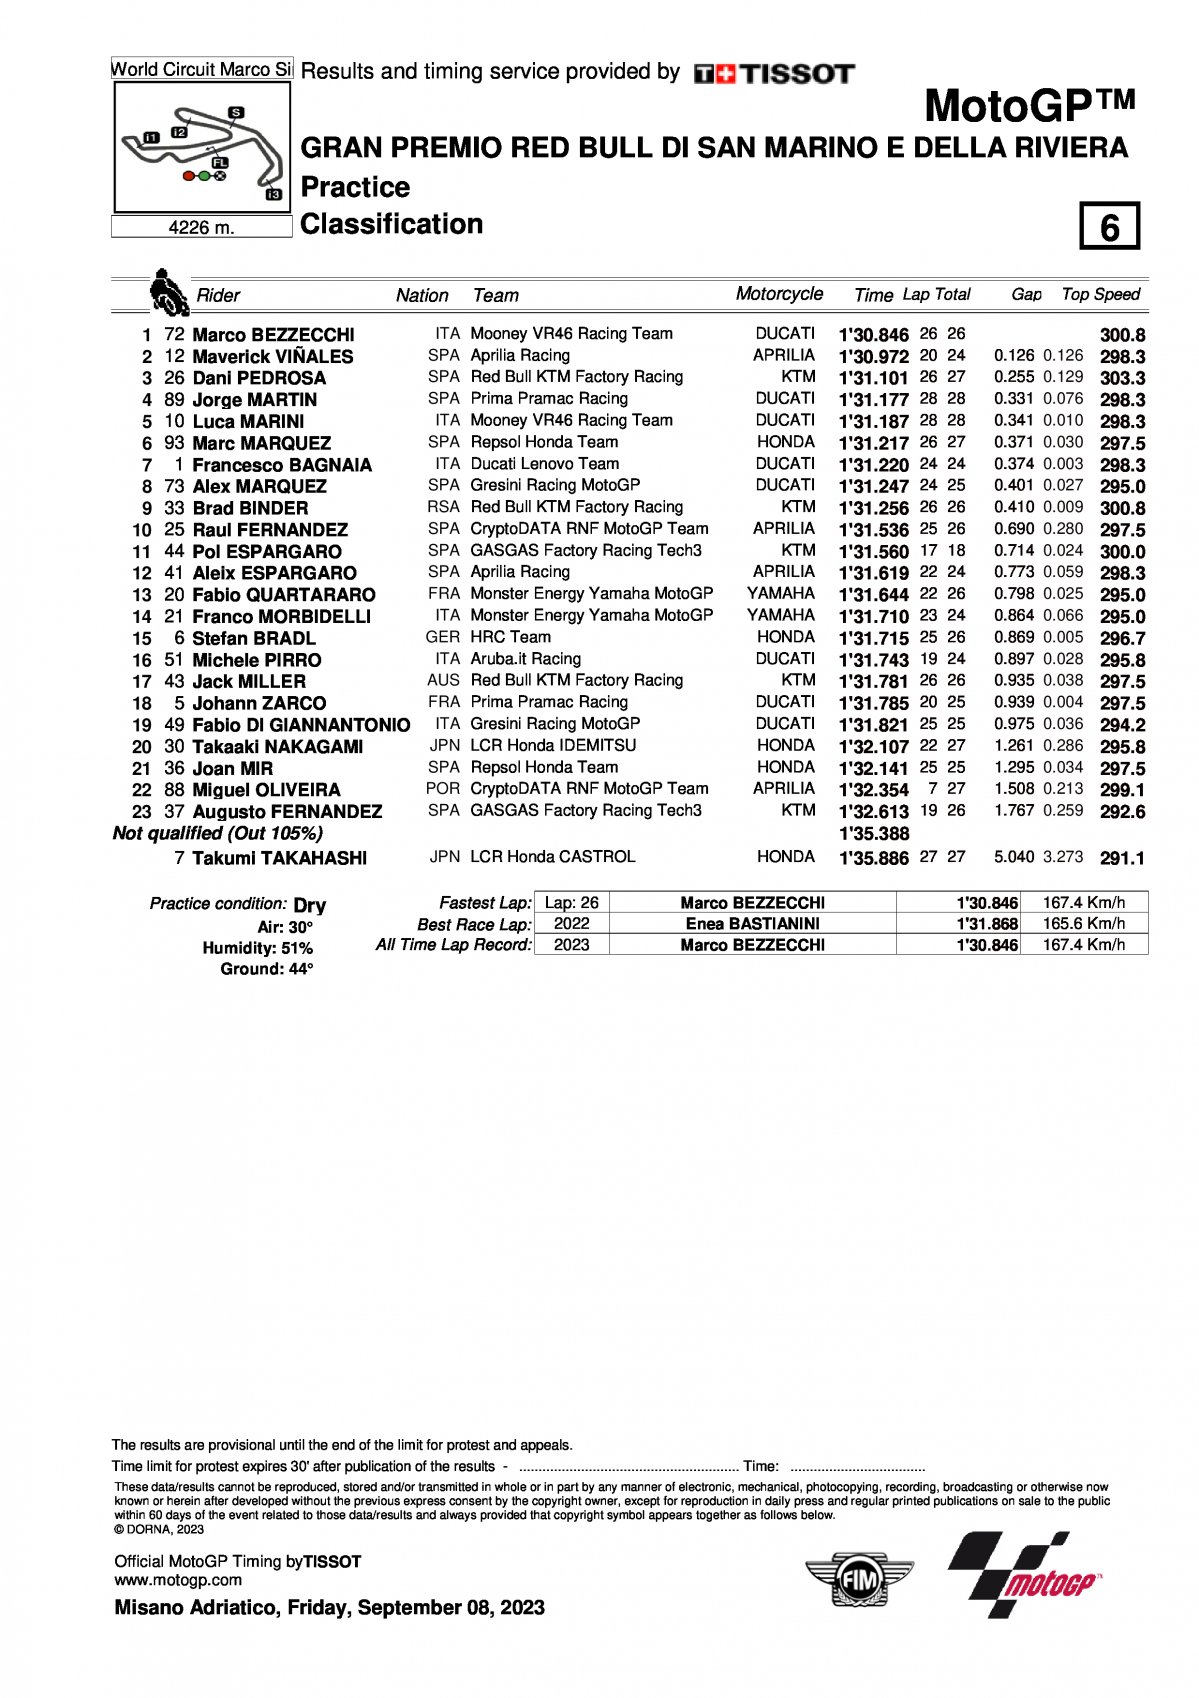 Результаты зачетной практики FP2 Гран-При Сан-Марино, MotoGP (8/09/2023)